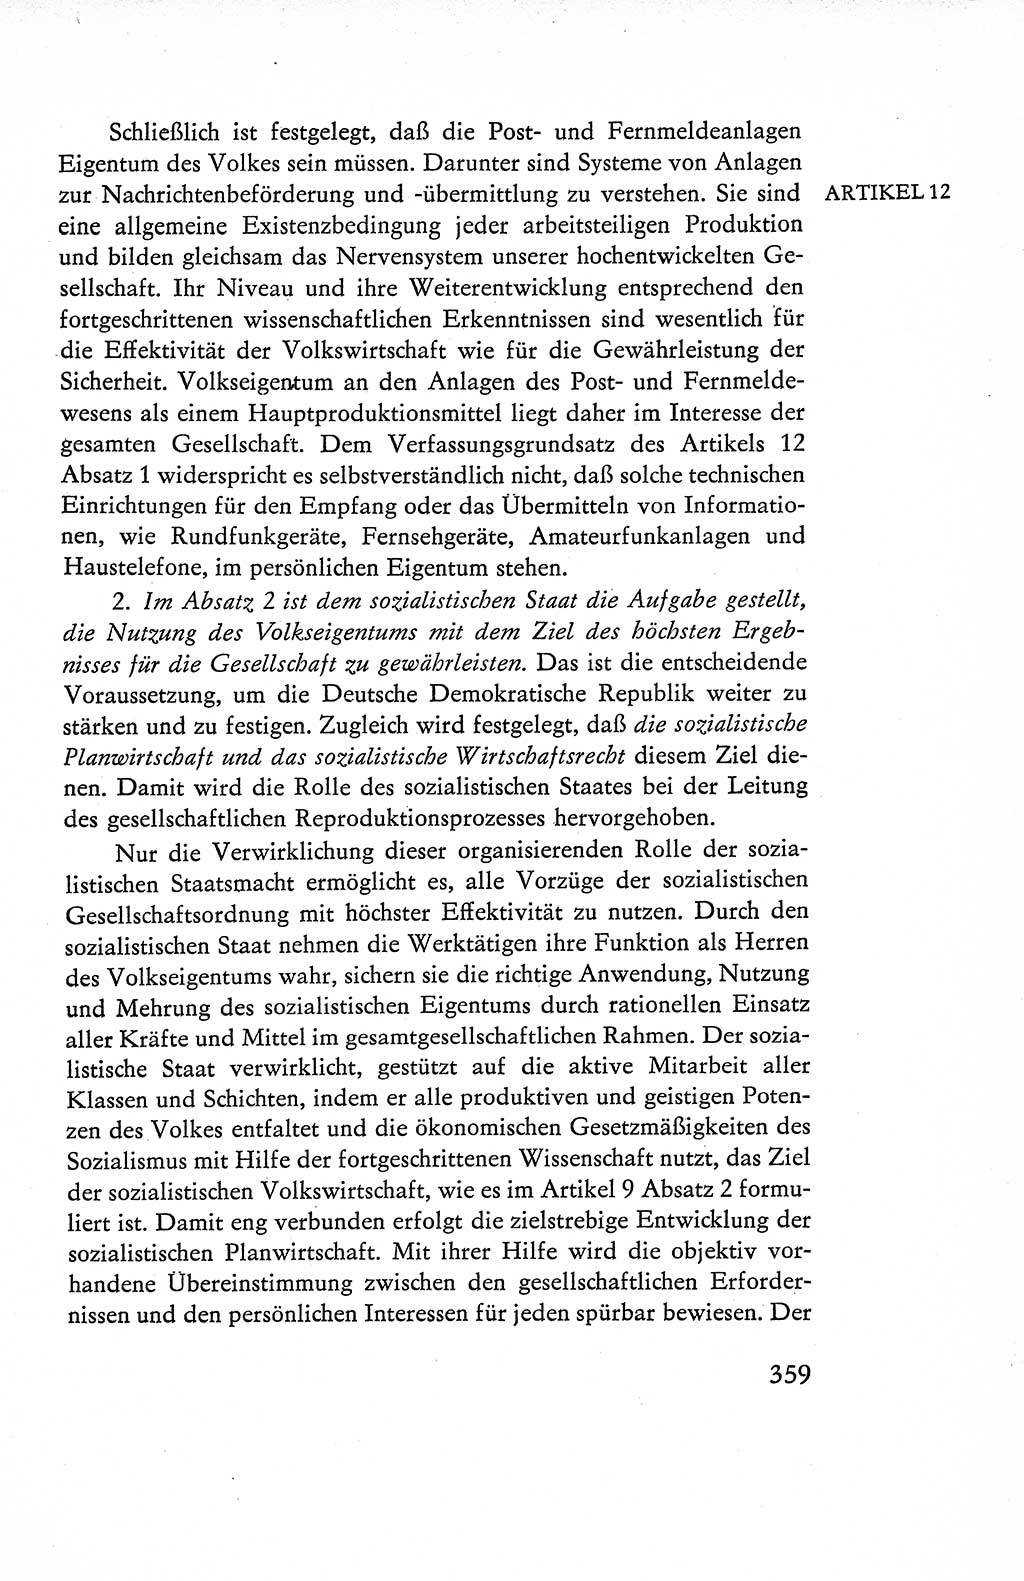 Verfassung der Deutschen Demokratischen Republik (DDR), Dokumente, Kommentar 1969, Band 1, Seite 359 (Verf. DDR Dok. Komm. 1969, Bd. 1, S. 359)